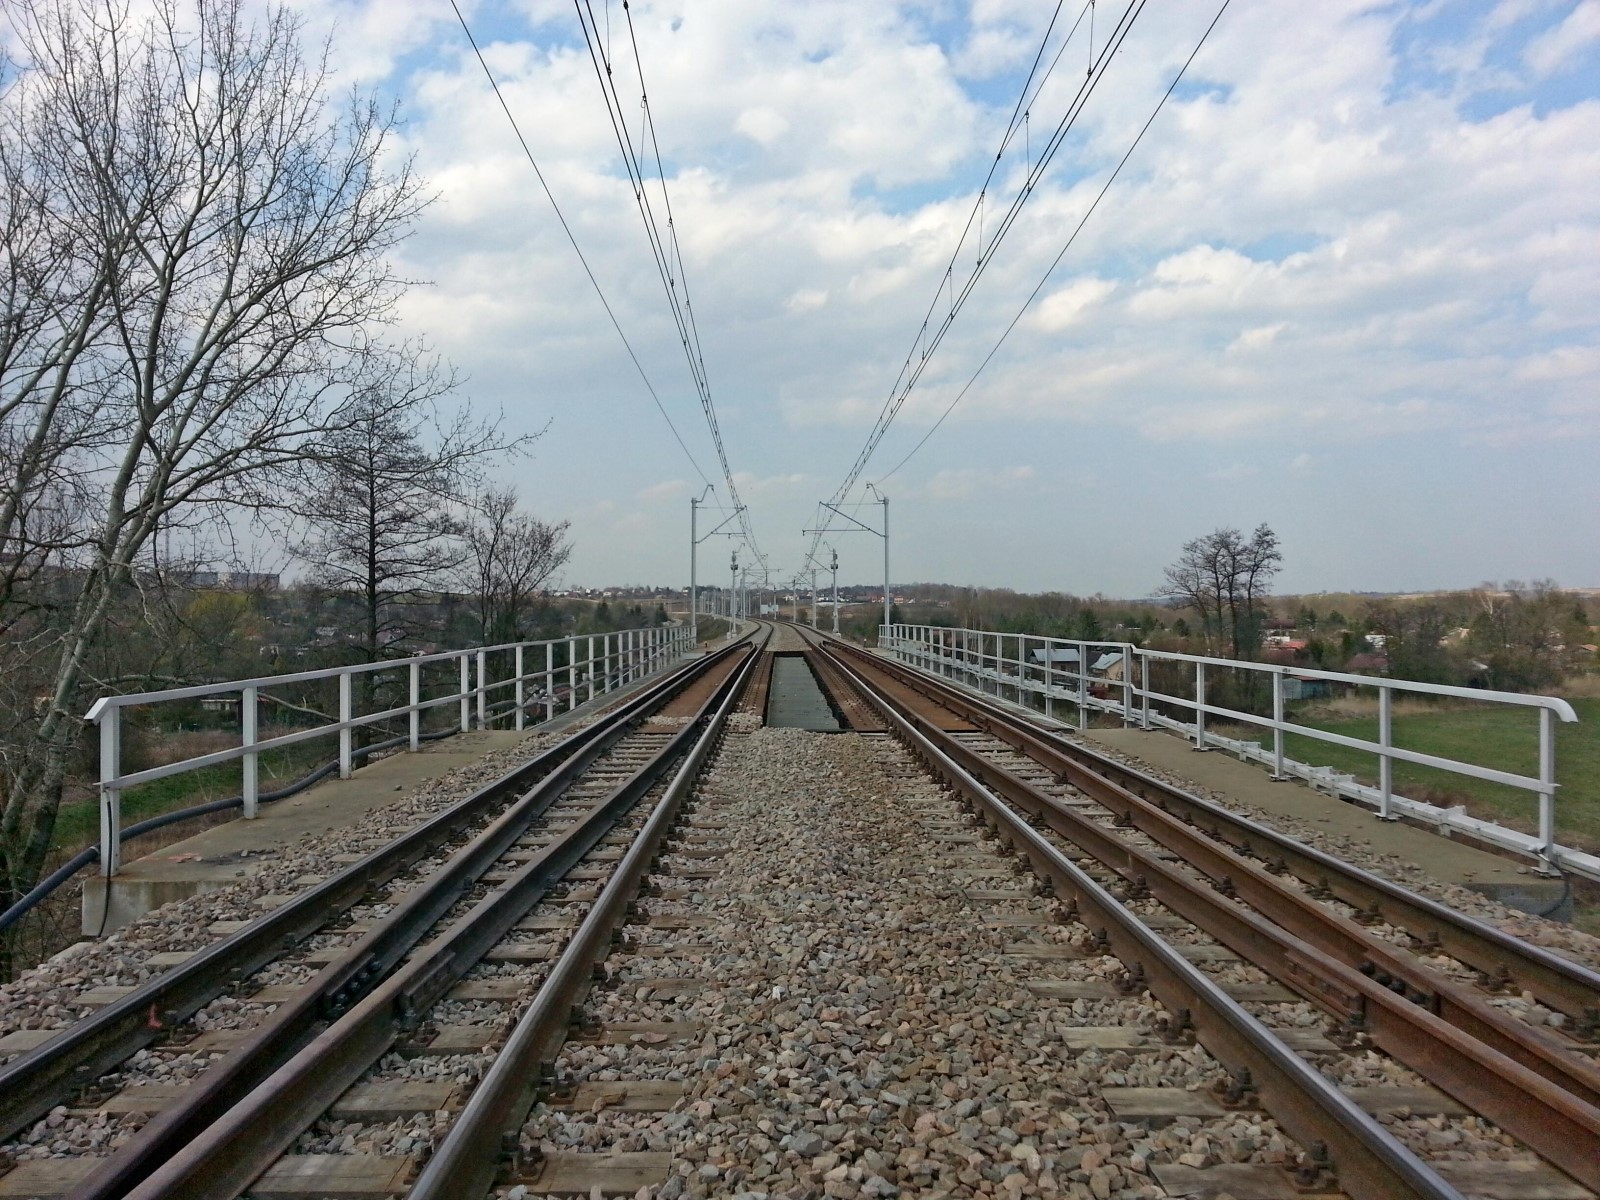 Prace budowlane na torze kolejowym, Kraków  - Budownictwo kolejowe